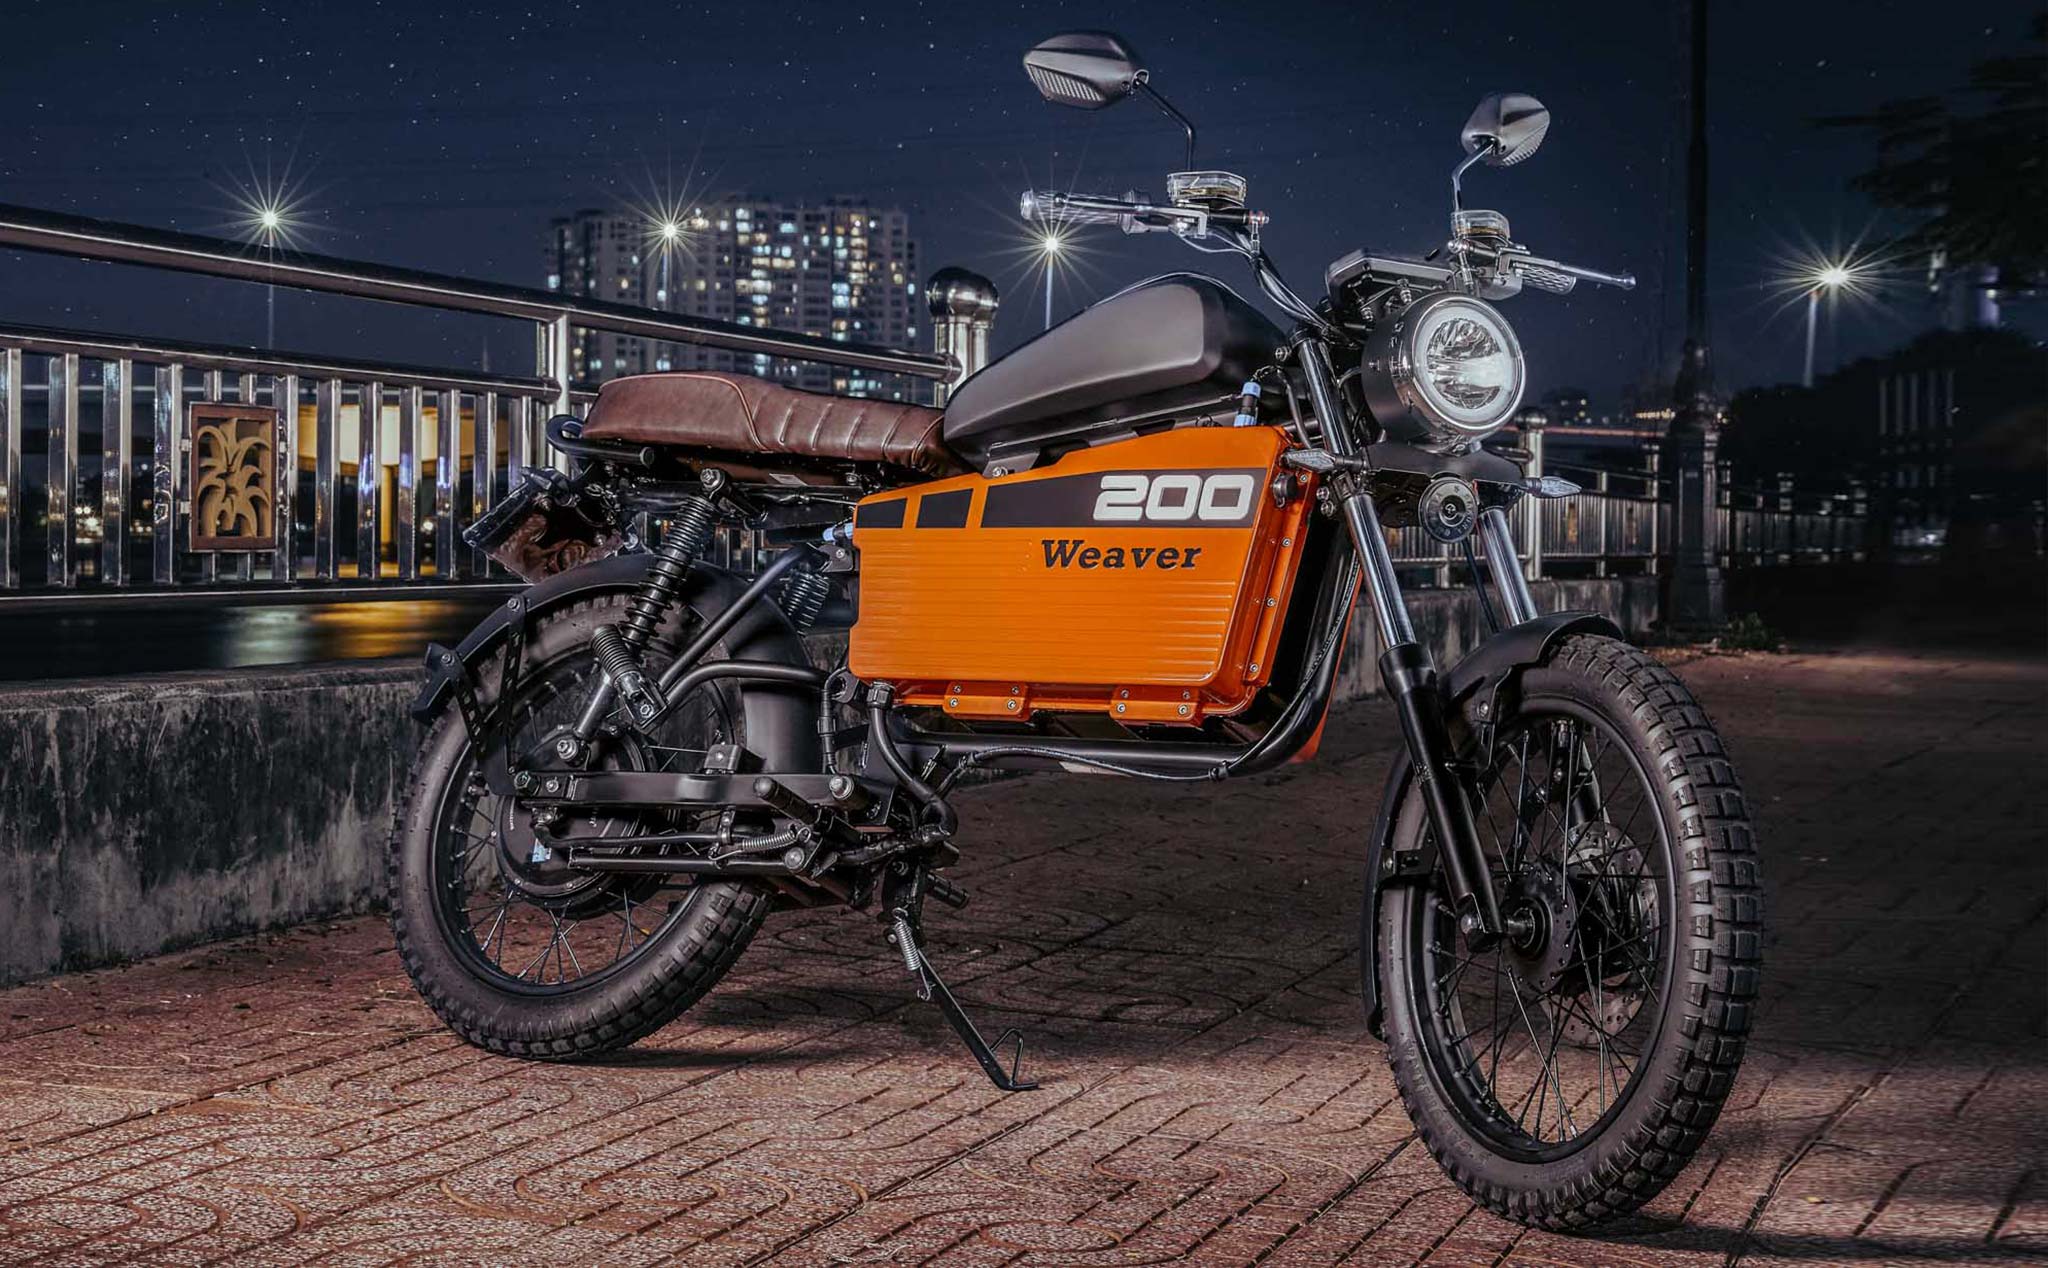 Dat Bike Weaver 200 chính thức: giá 54,9 triệu đồng, chạy được 200 km, sạc 3 tiếng đầy pin